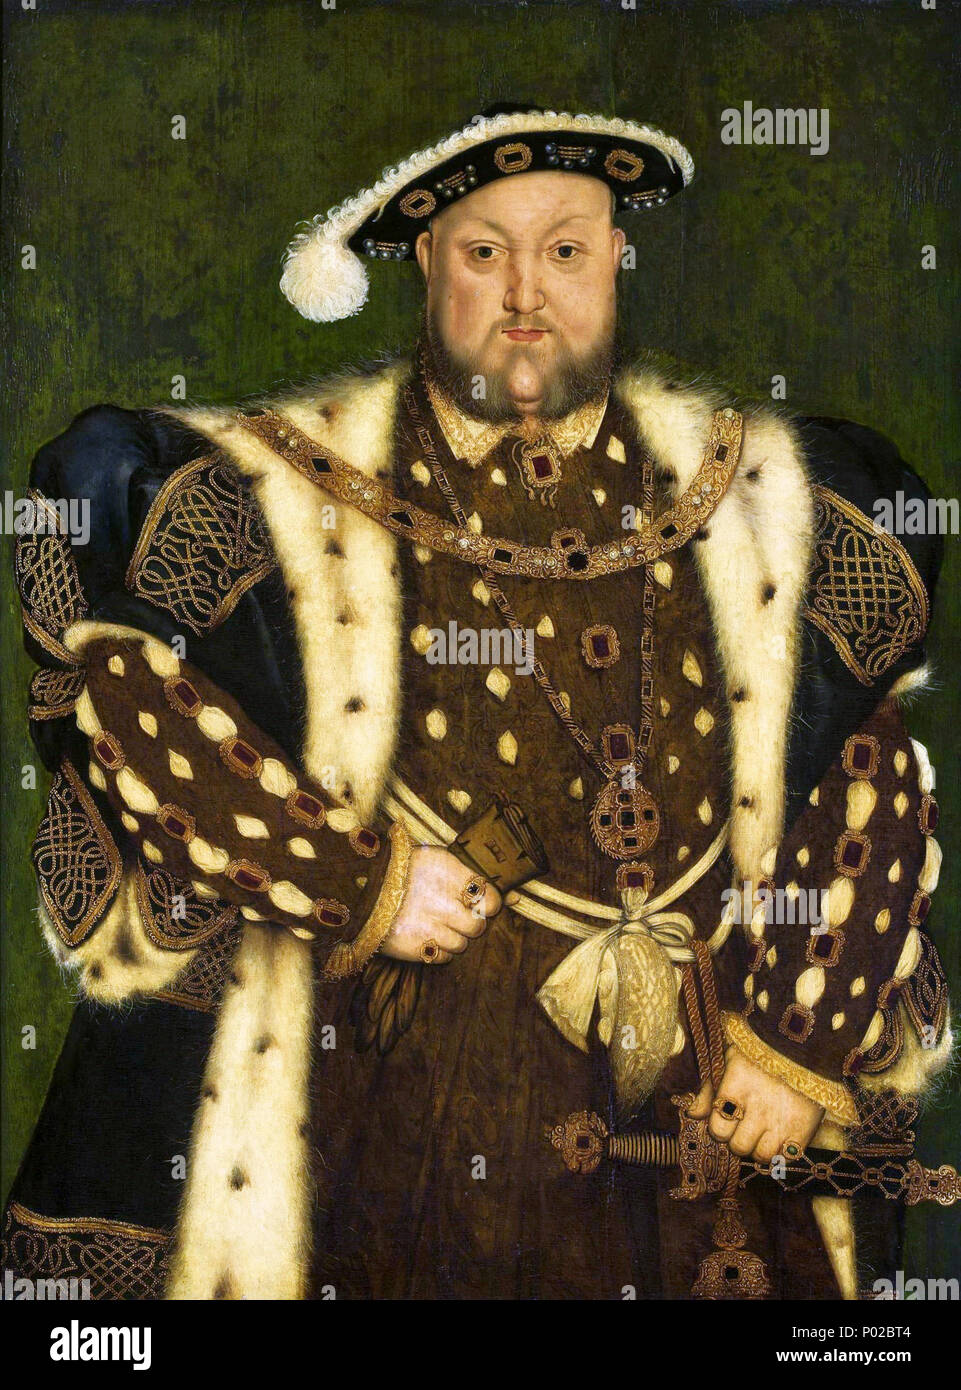 . Portrait de Henry VIII d'Angleterre. Années 1540 Holbein 15 Henry VIII de l'Angleterre Banque D'Images